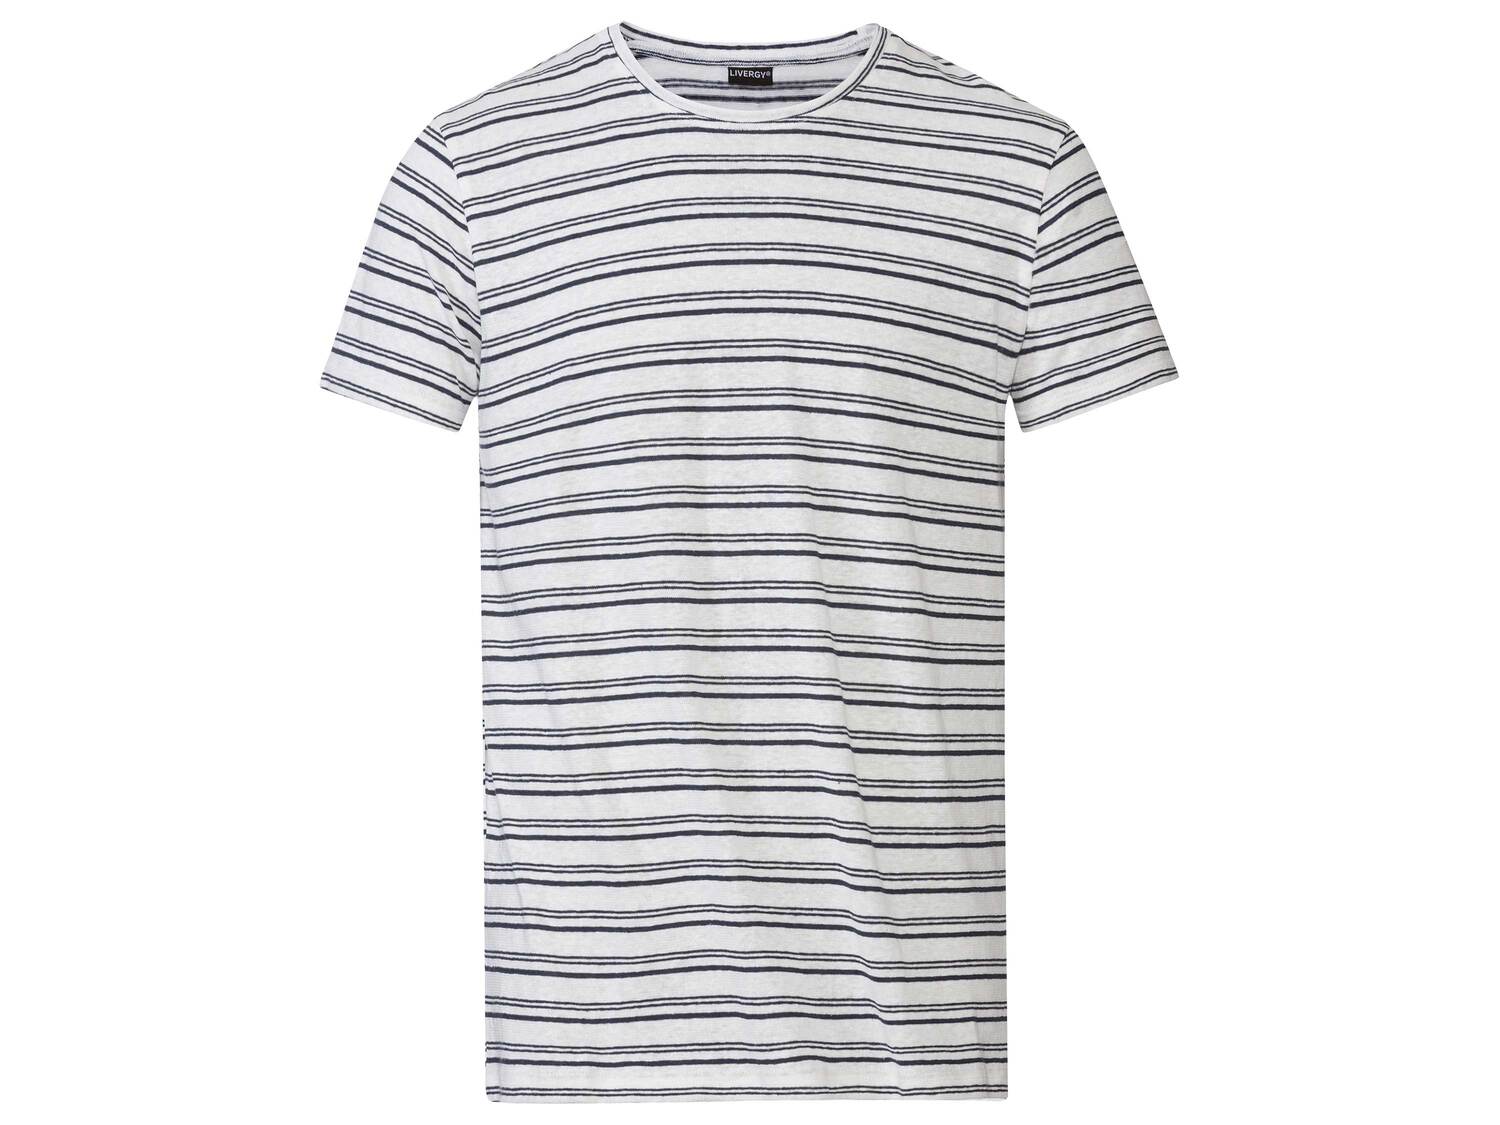 T-shirt en lin , le prix 7.99 &#8364; 
- Du M au XL selon mod&egrave;le
- ...